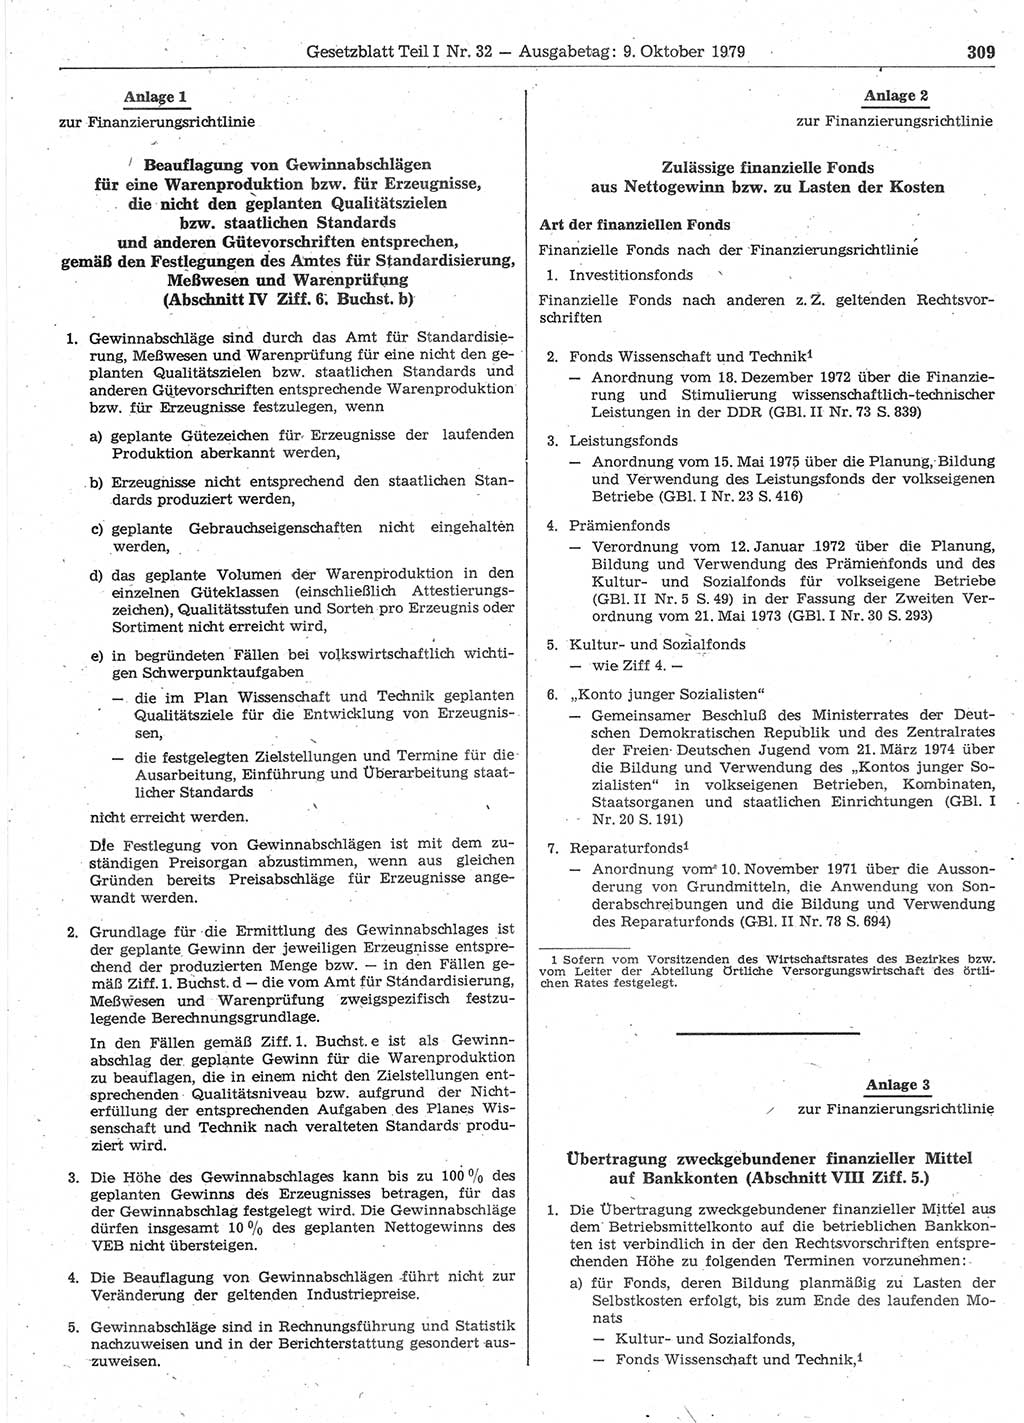 Gesetzblatt (GBl.) der Deutschen Demokratischen Republik (DDR) Teil Ⅰ 1979, Seite 309 (GBl. DDR Ⅰ 1979, S. 309)